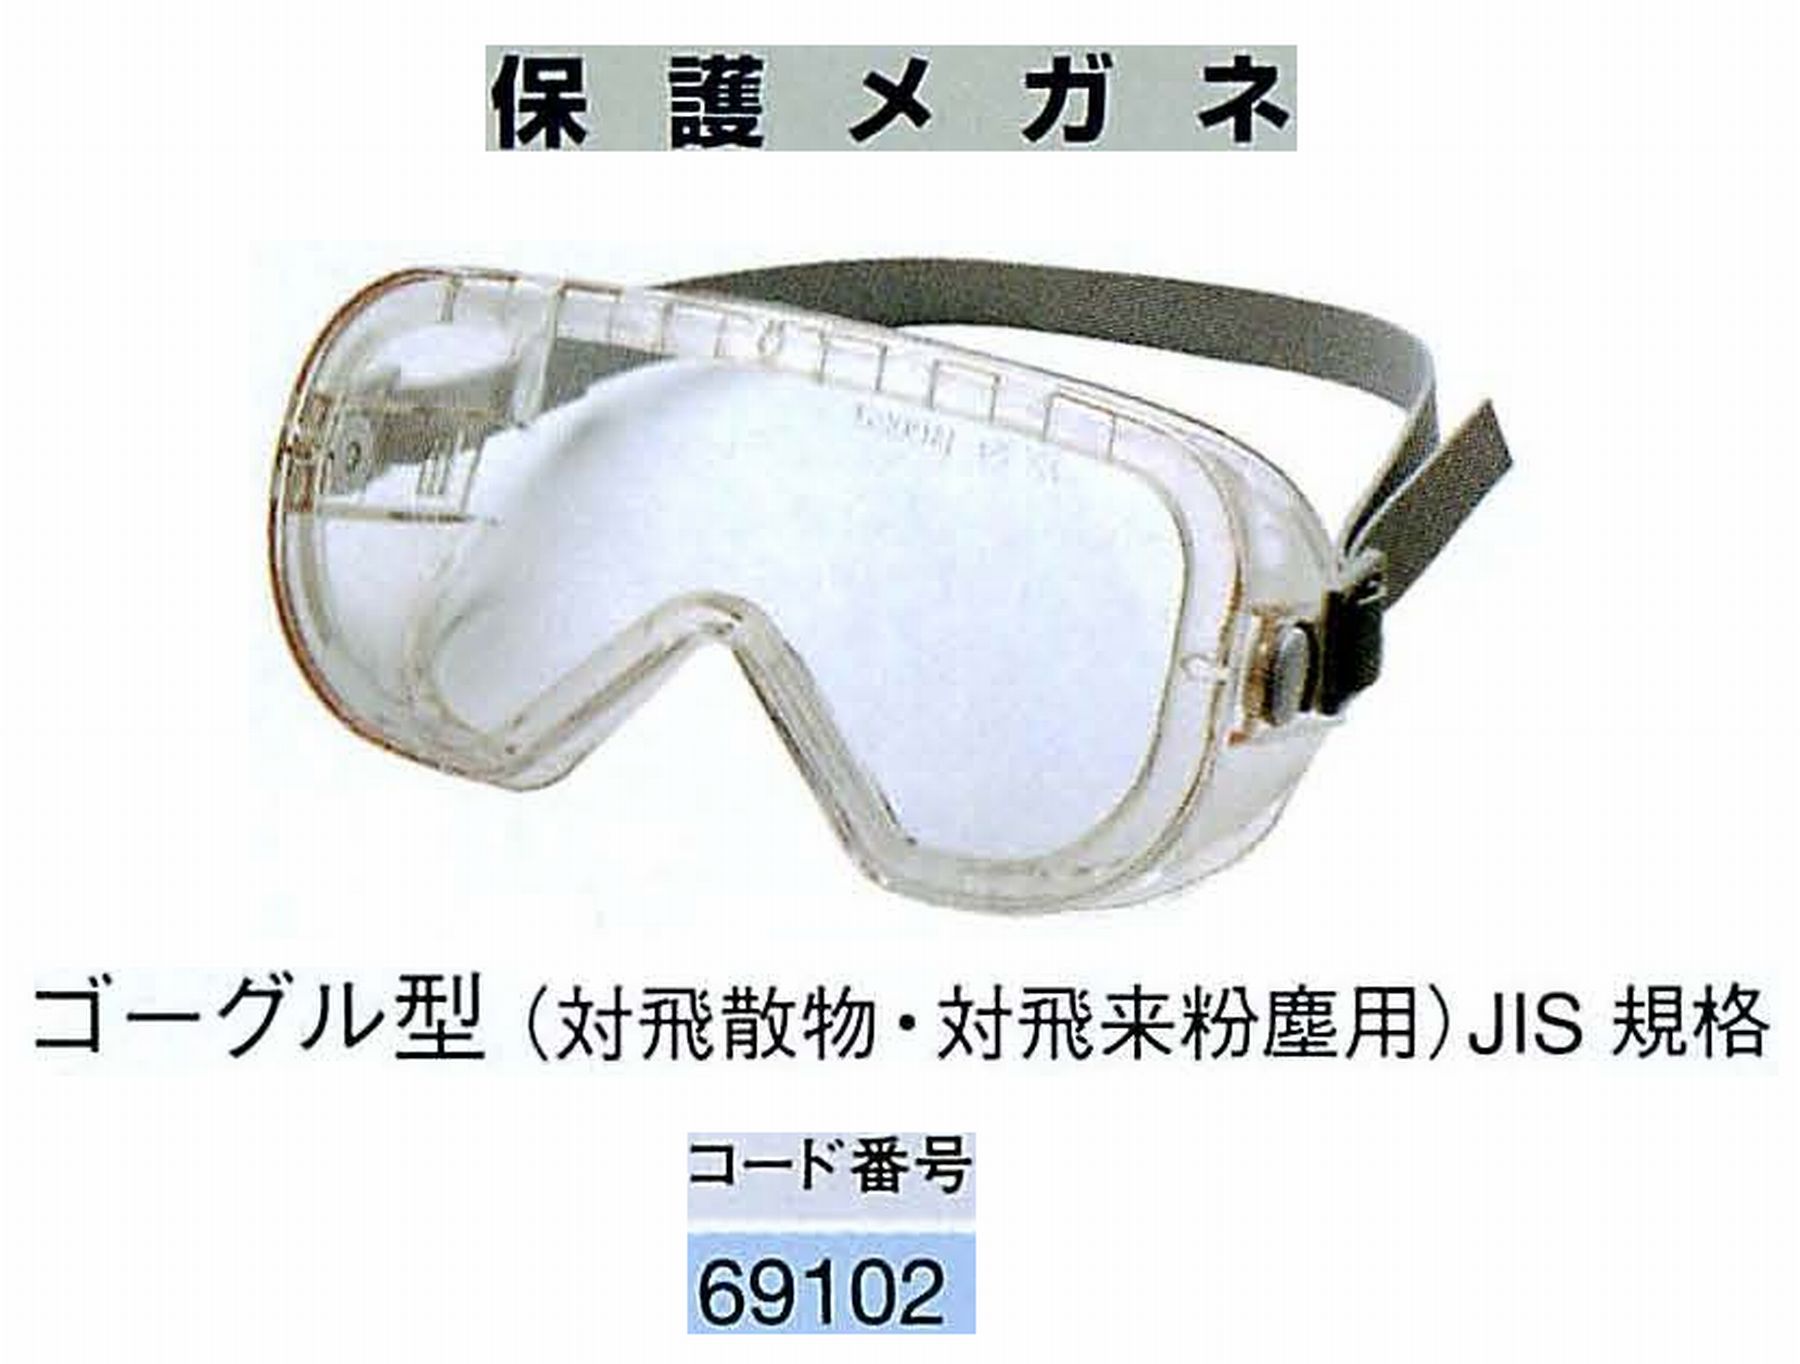 ナカニシ/NAKANISHI 防護用品 保護メガネ ゴーグル型 69102